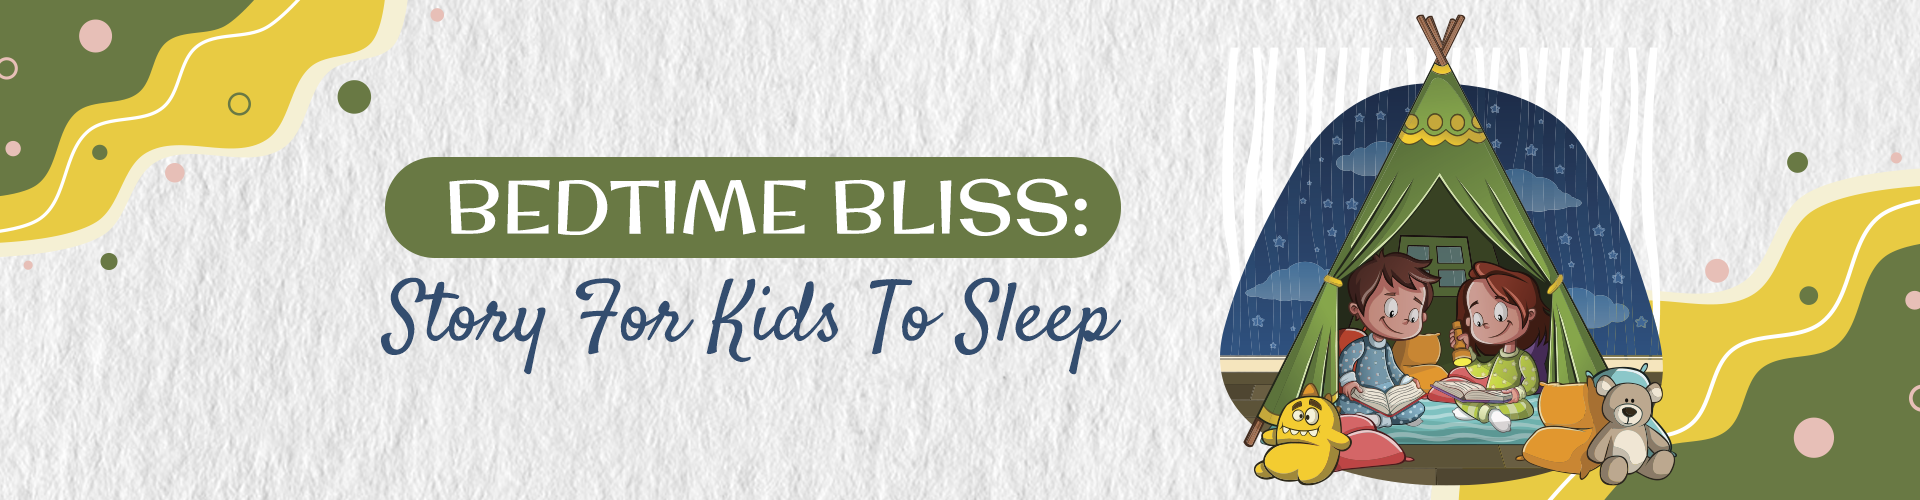 Bedtime Bliss Story For Kids 1